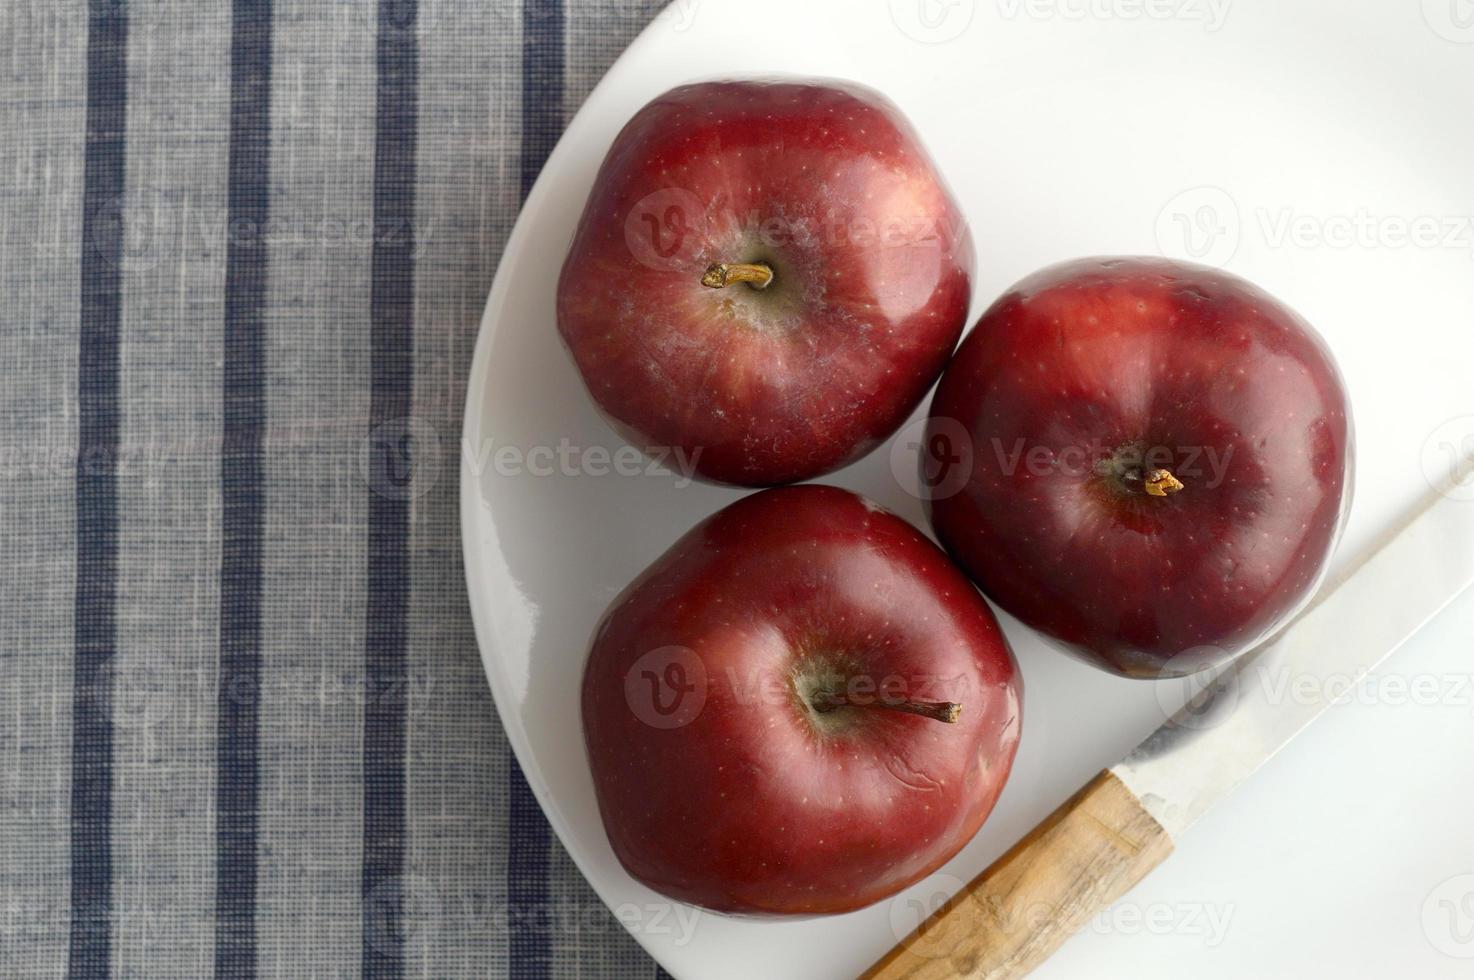 De délicieuses pommes dans une assiette avec un couteau sur une nappe à rayures photo